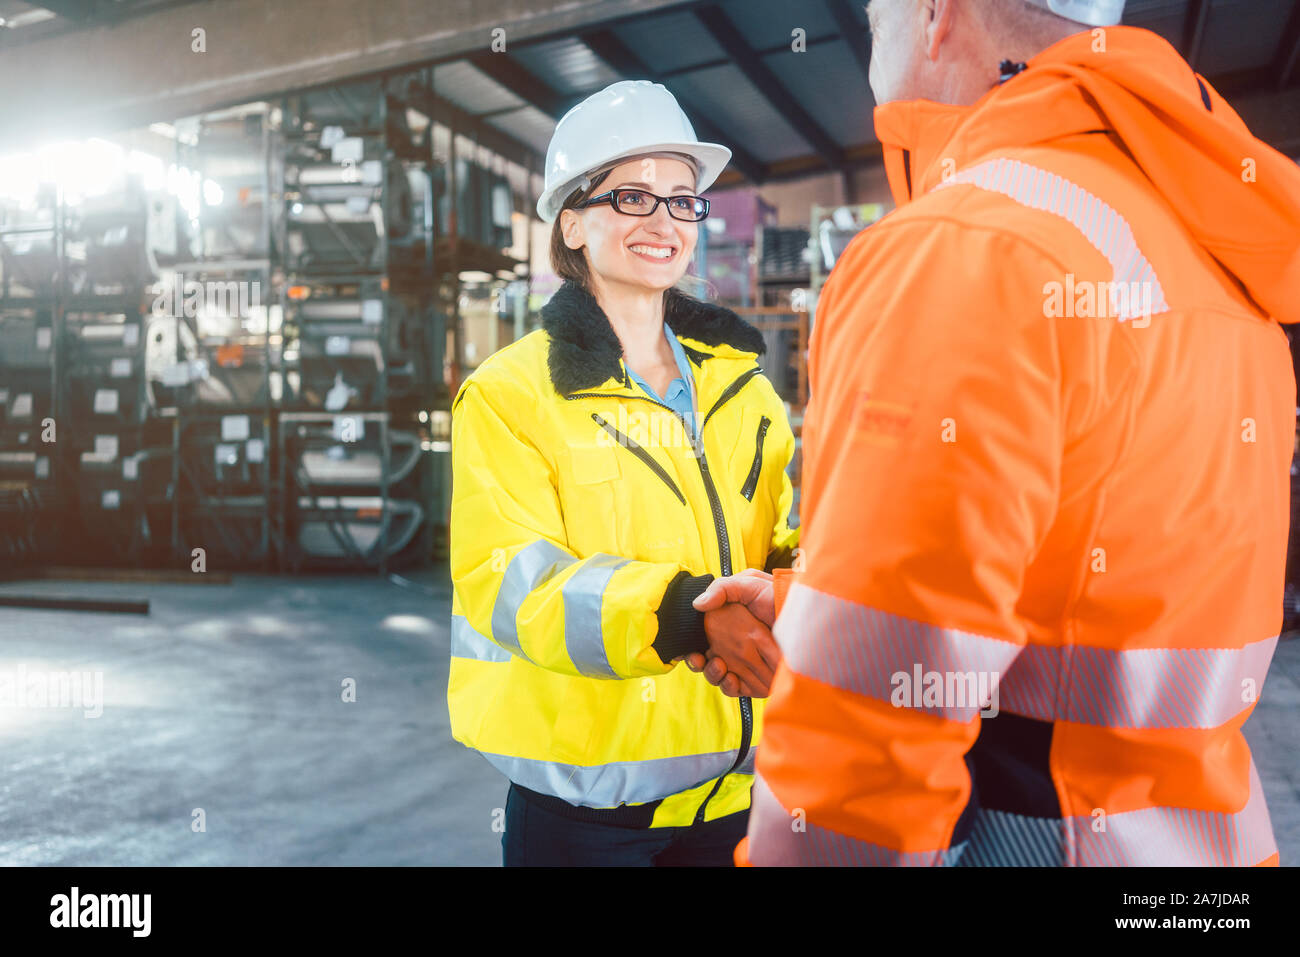 worker and customer in warehouse doing Handshake Stock Photo